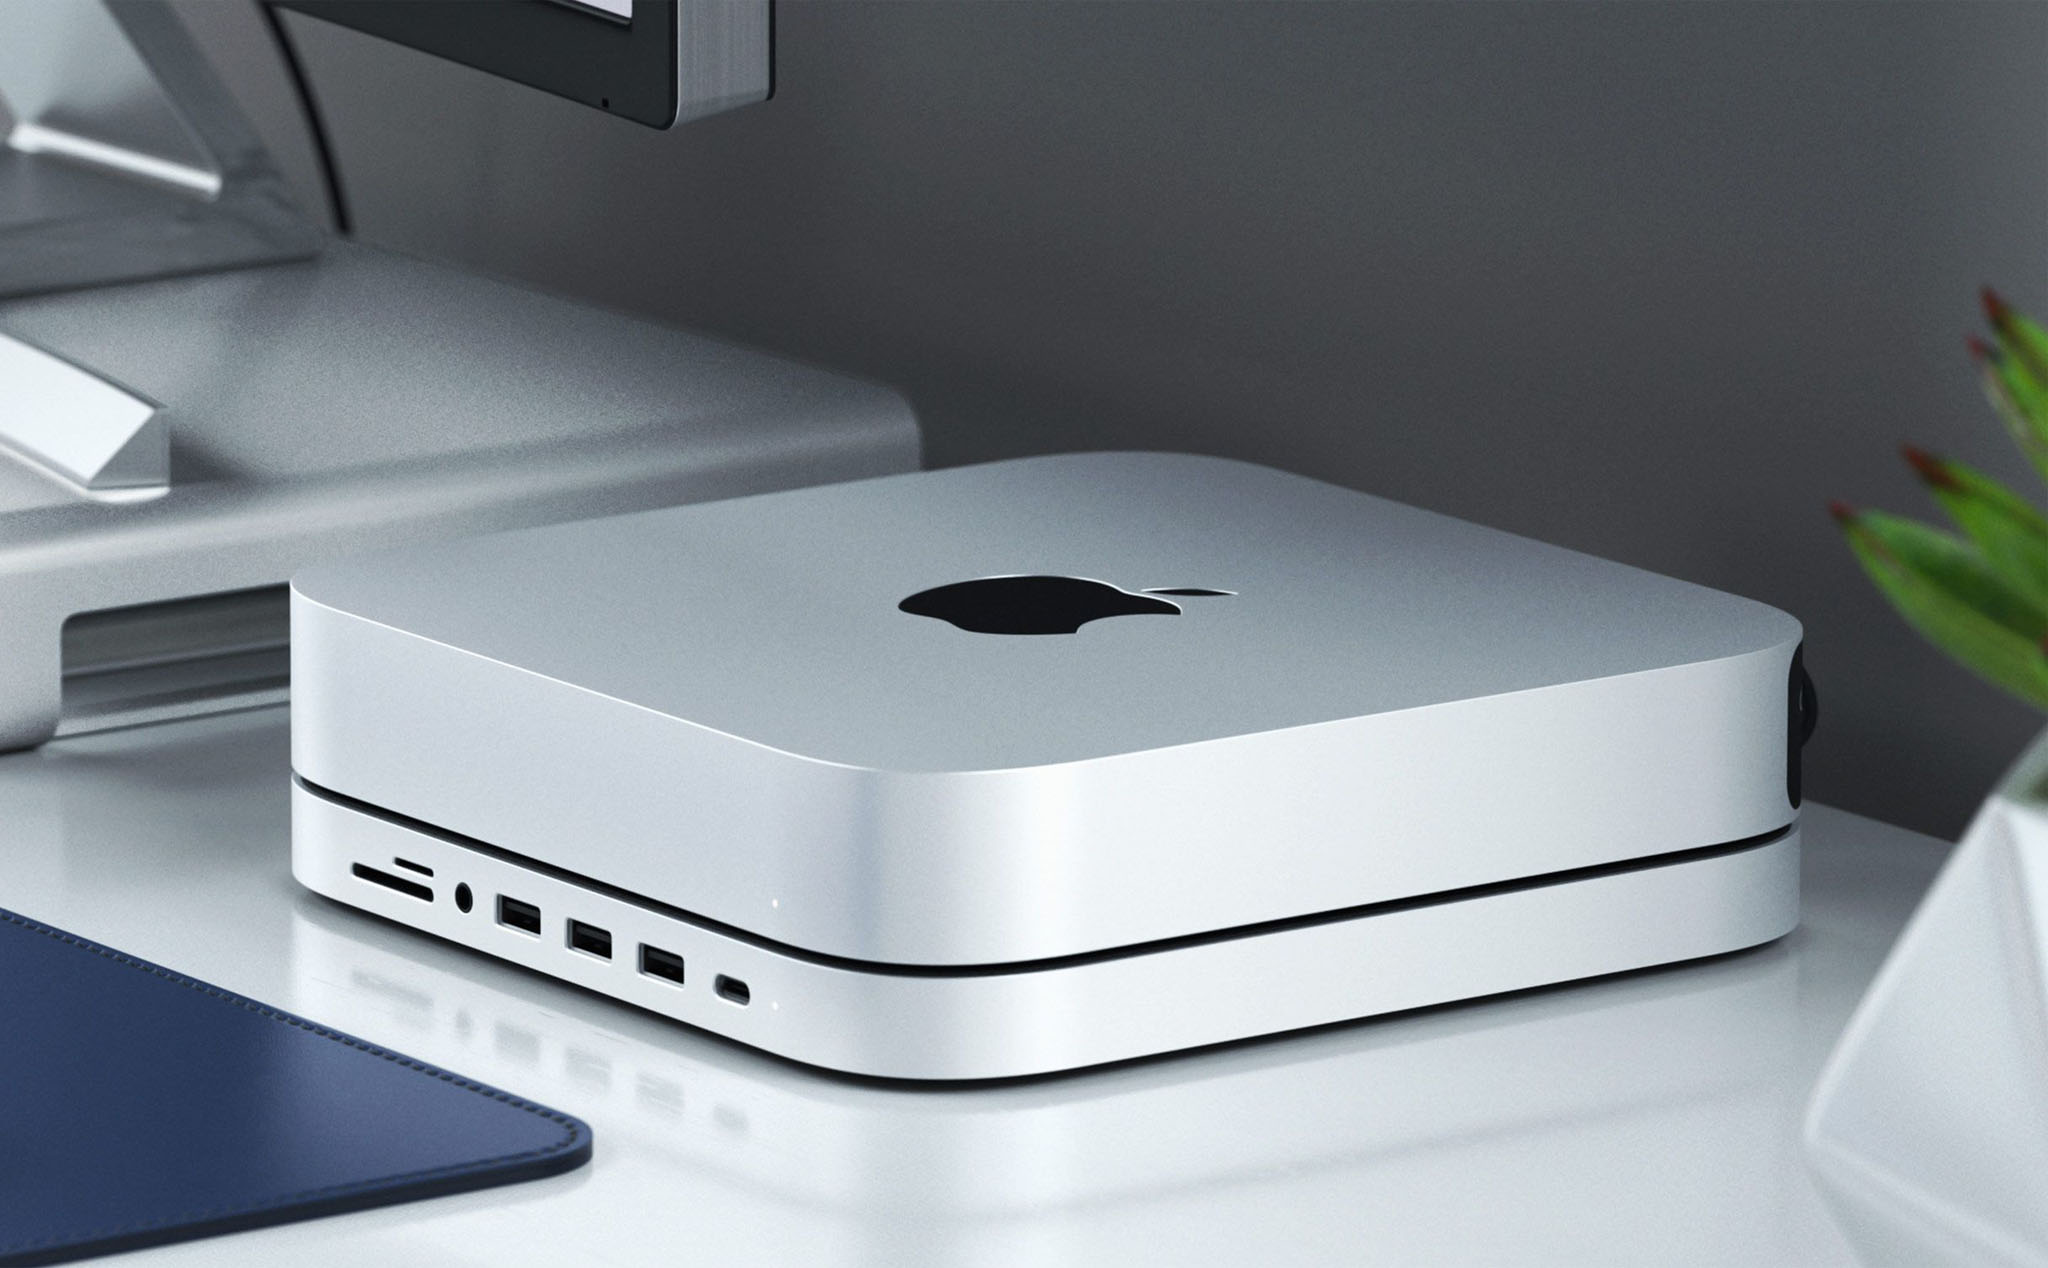 Satechi ra mắt hub dành cho Mac Mini M1, thiết kế vừa như in, giá 100 USD